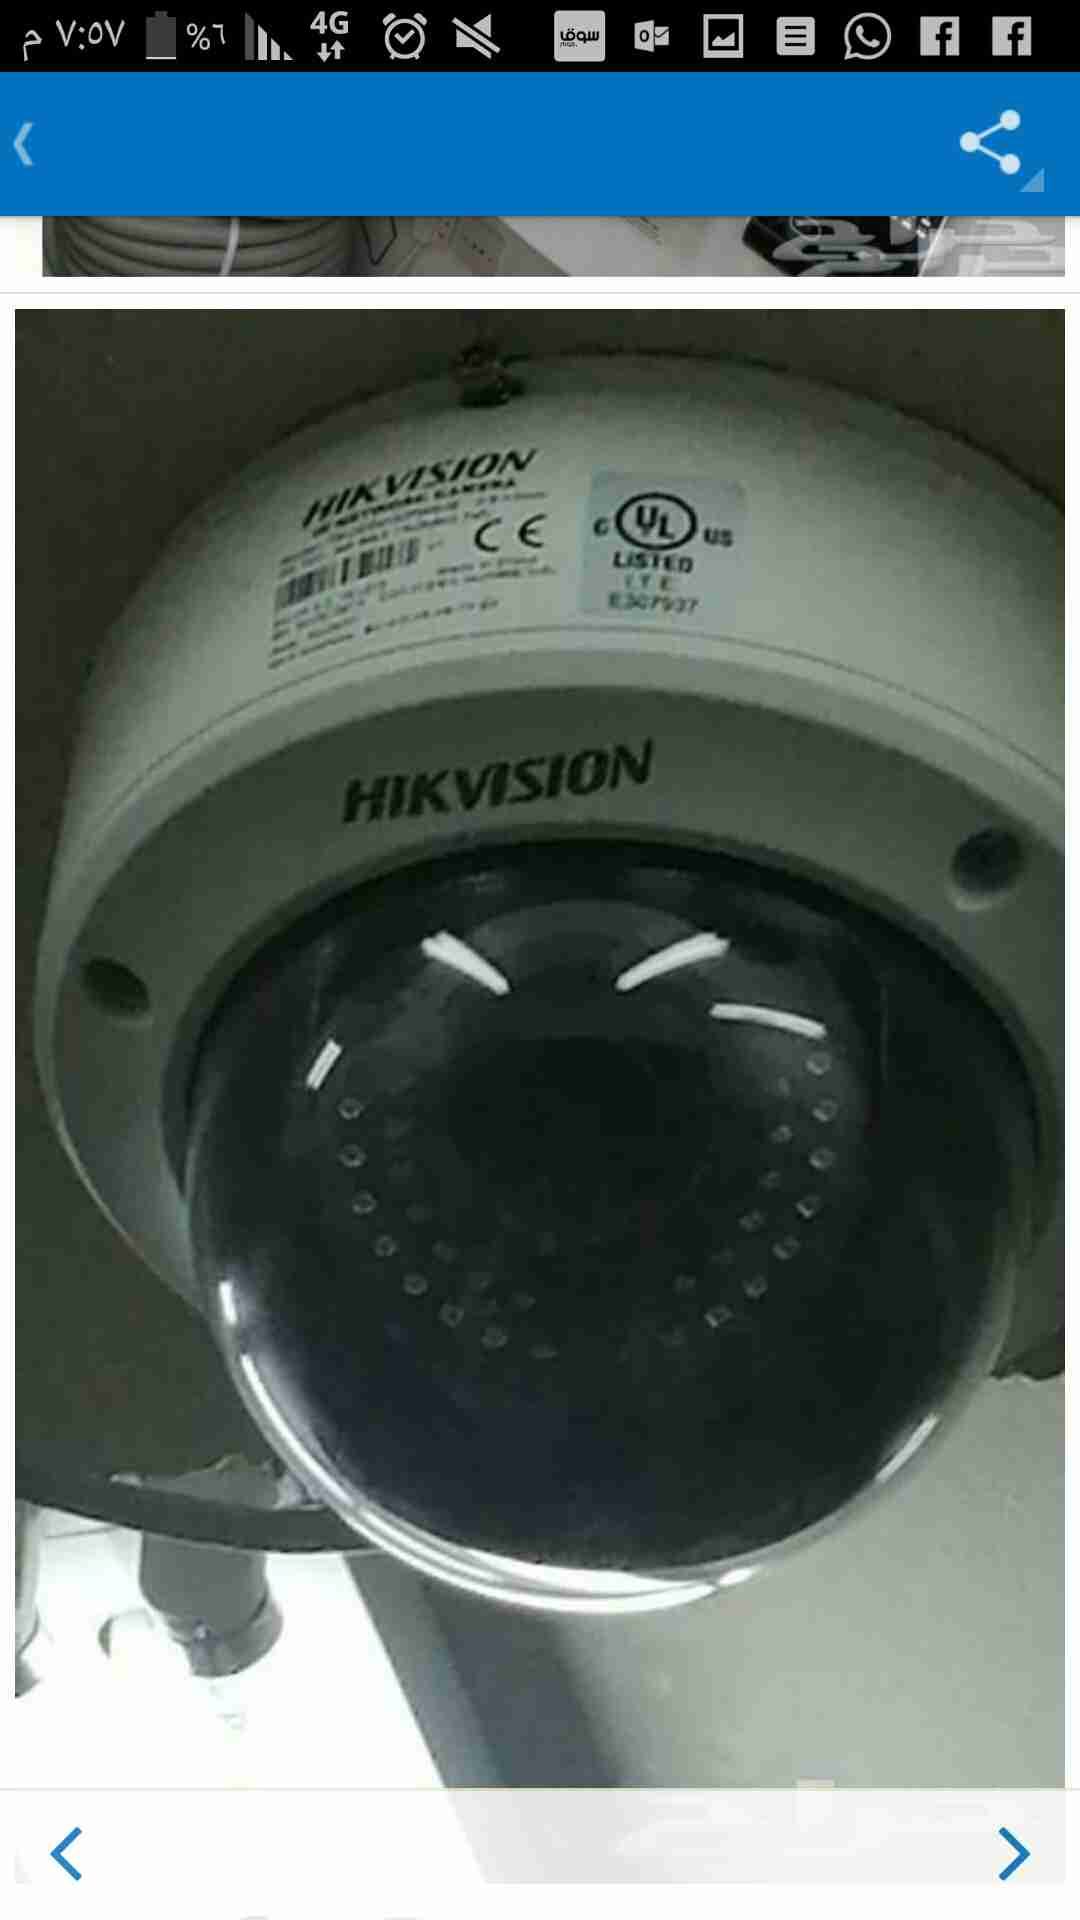 جهاز قياس اللزوجة-  كاميرات مراقبة حديثة...